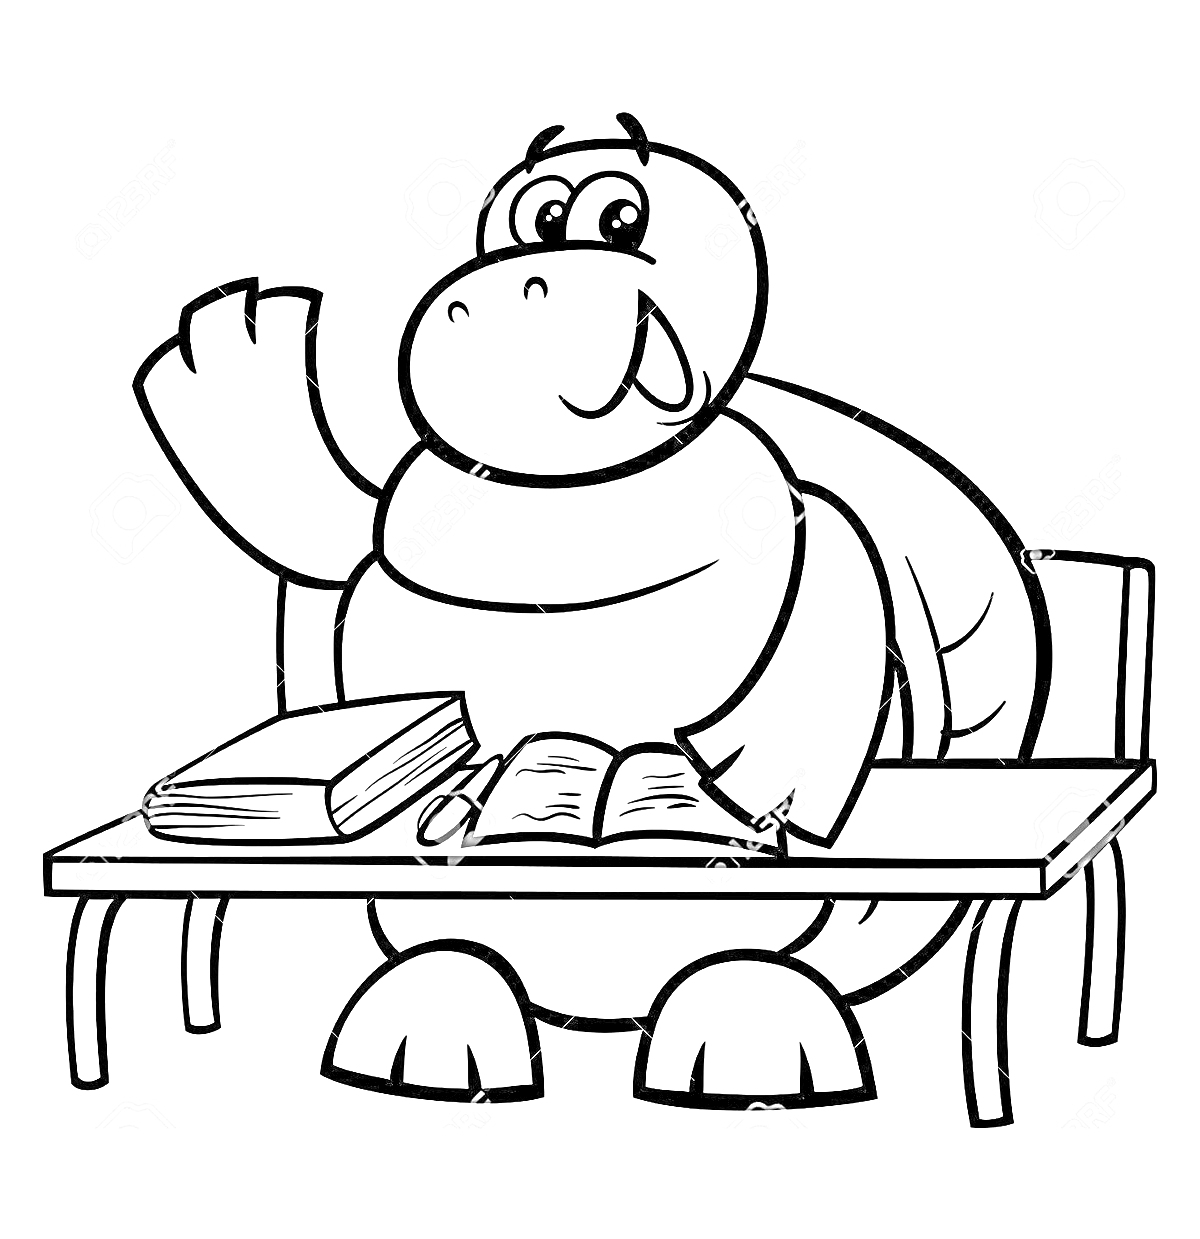 Черепаха за партой с учебниками и ручкой